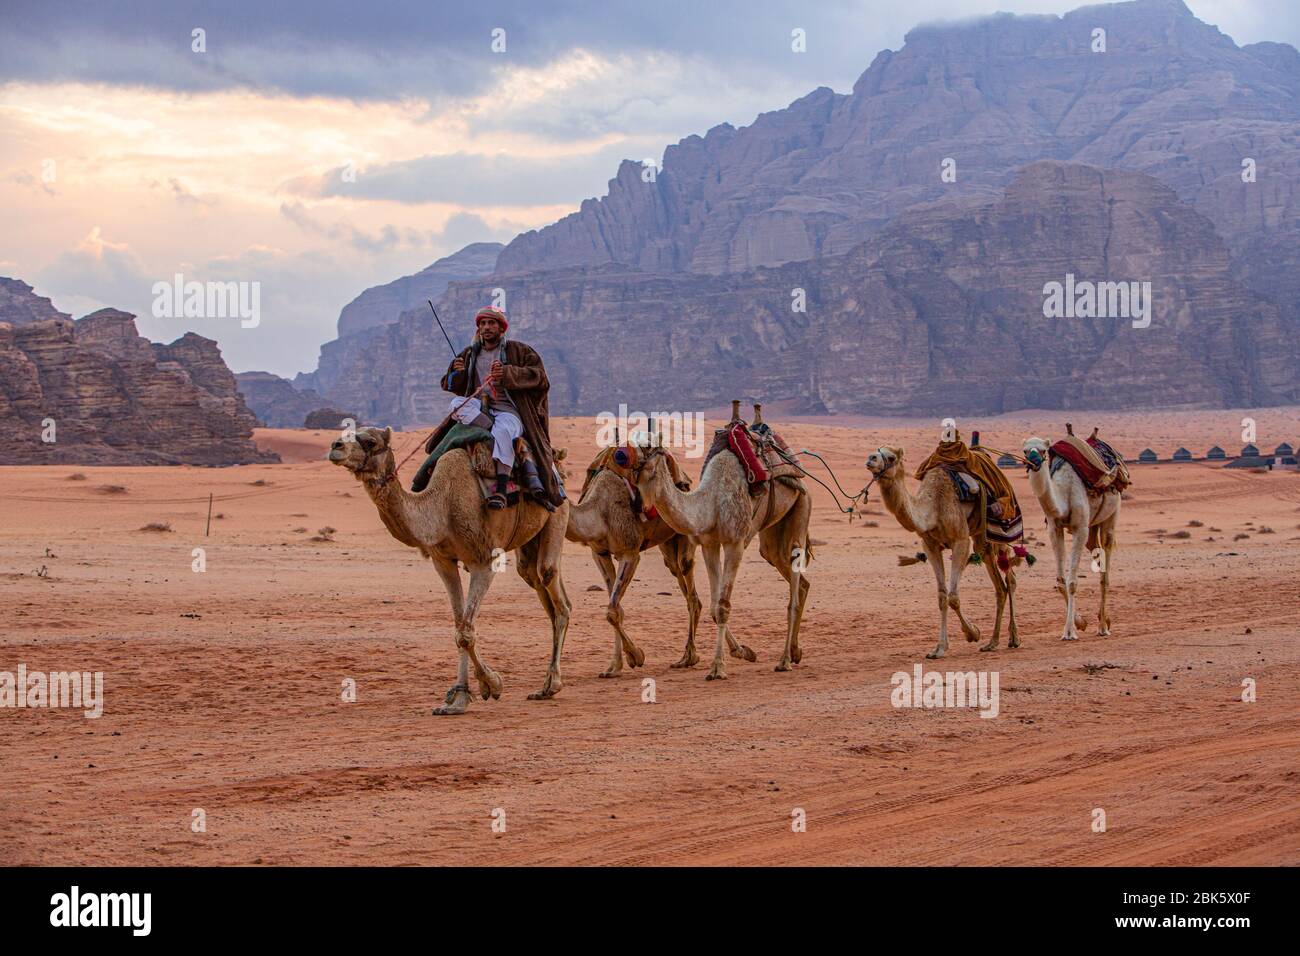 Bedouins in camel train at the Wadi Rum desert, Jordan Stock Photo